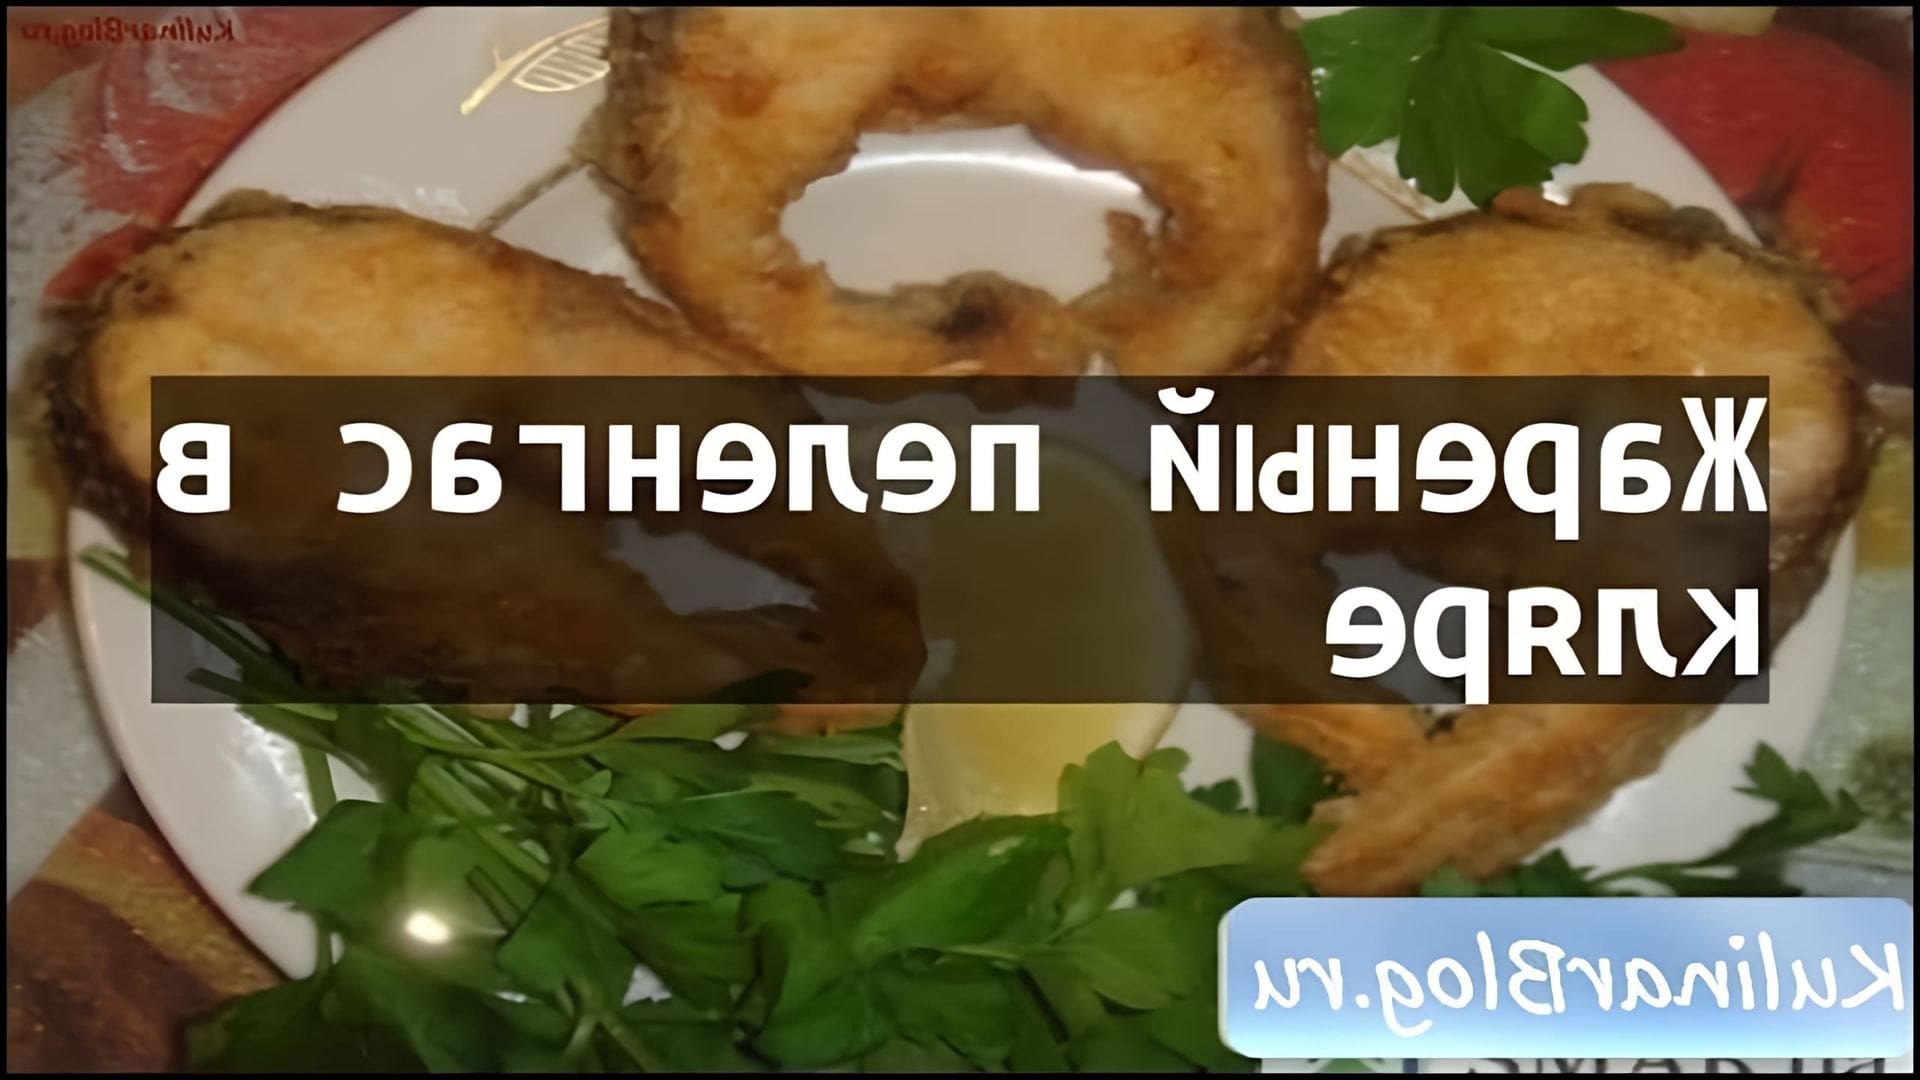 Рецепт Жареный пеленгас вкляре - это видео-ролик, который демонстрирует процесс приготовления вкусного и полезного блюда из рыбы